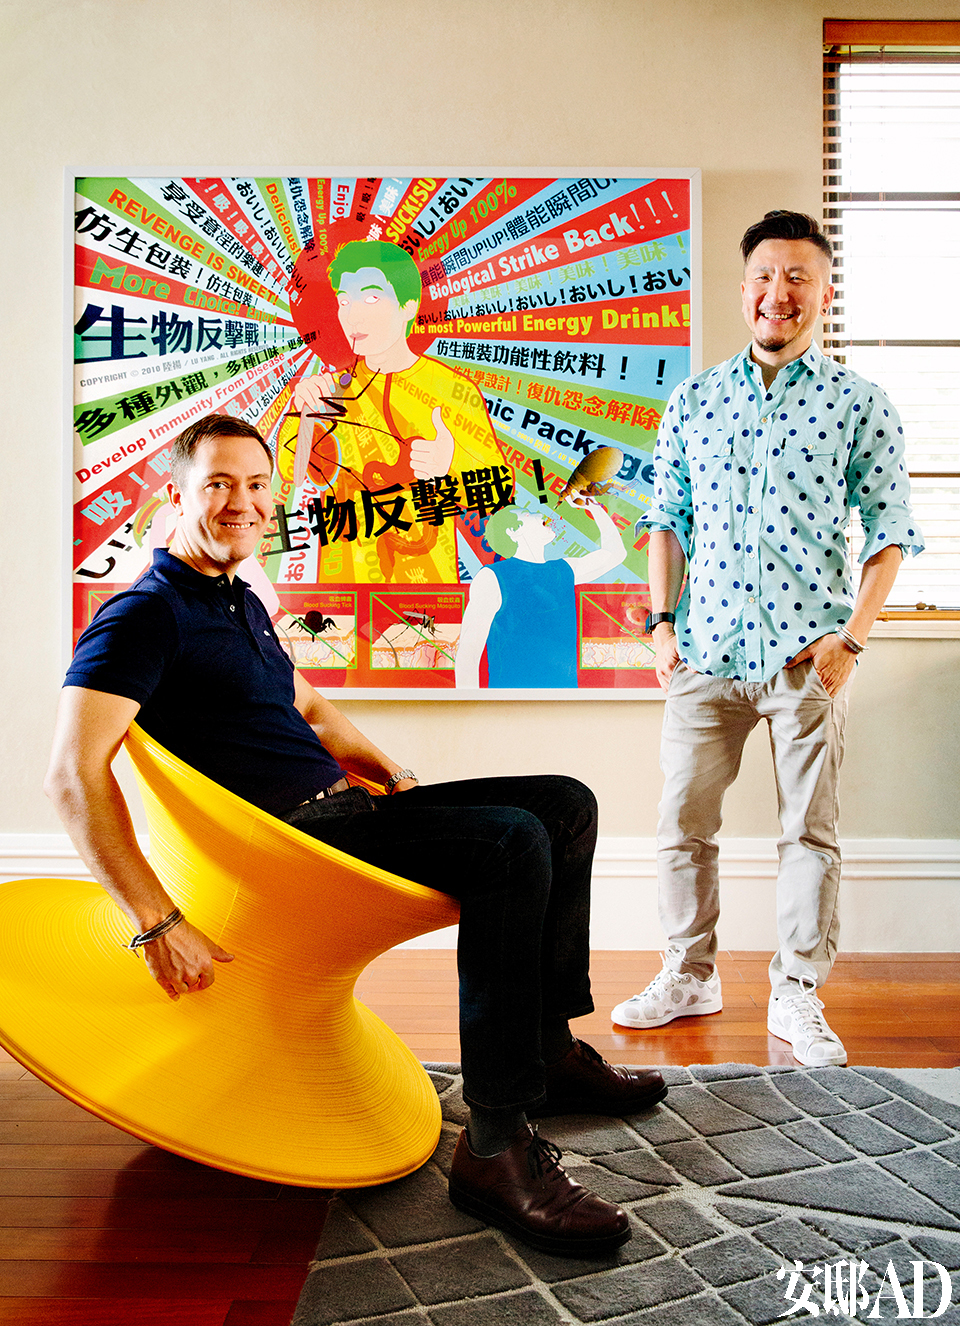 主人: Juan 陈汉全（右），来自马来西亚，曾从事广告、品牌宣传近20年，目前在某包装设计公司担任创意总监。热爱家居设计，与挚友Karl在上海工作、生活逾10年。黄色Spun摇椅来自Magis。